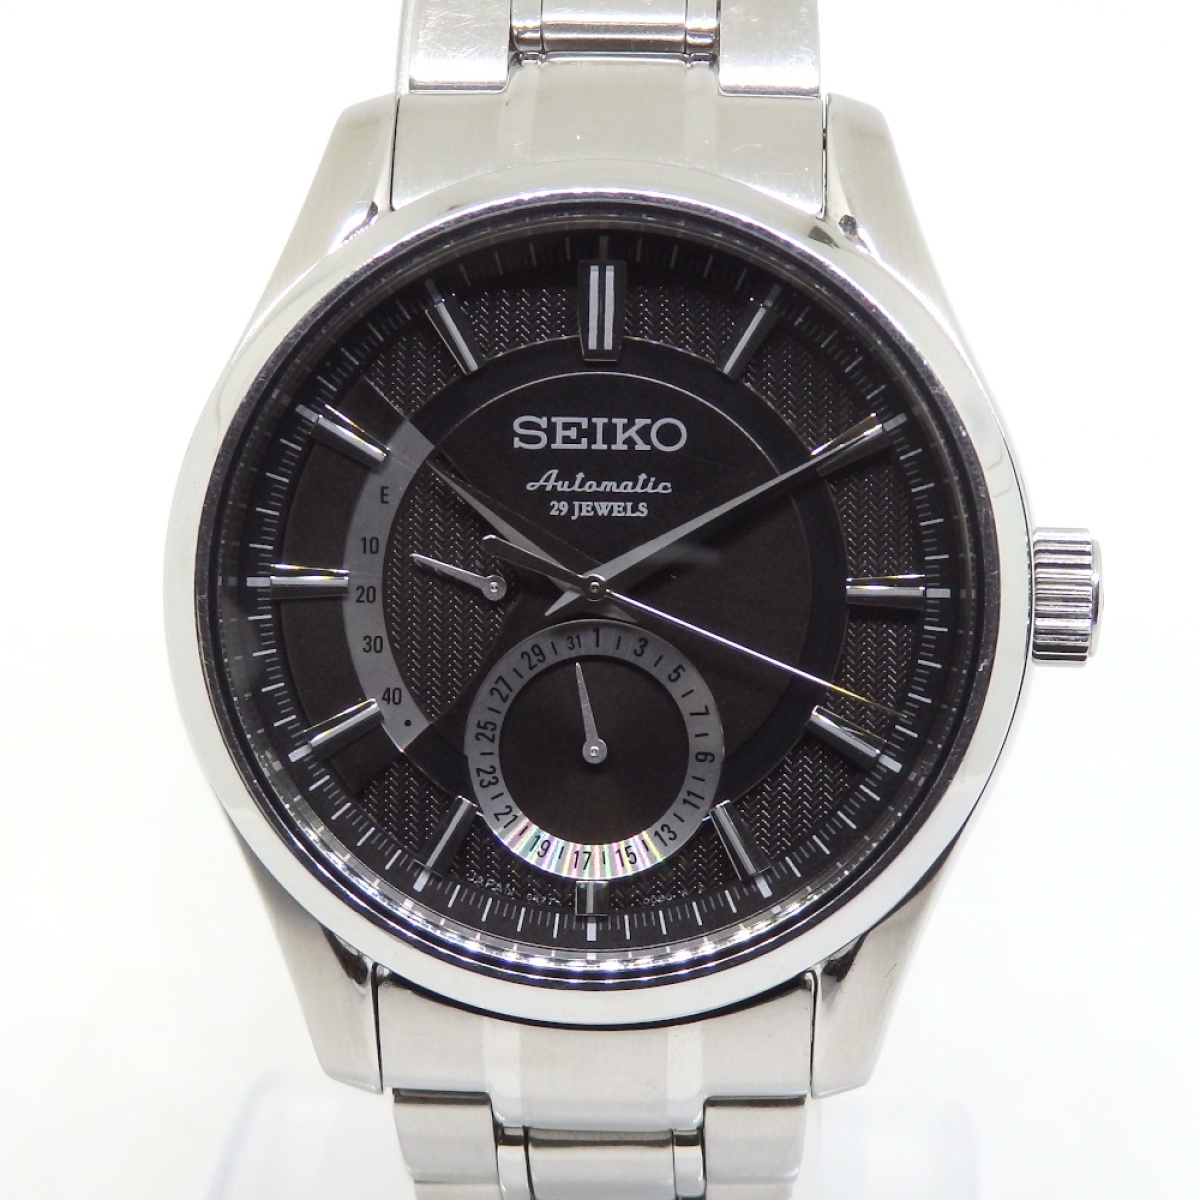 SEIKO セイコー プレザージュ 自動巻 パワーリザーブ 29石 29JEWELS 6R27-00A0 SARW003 メンズ 腕時計